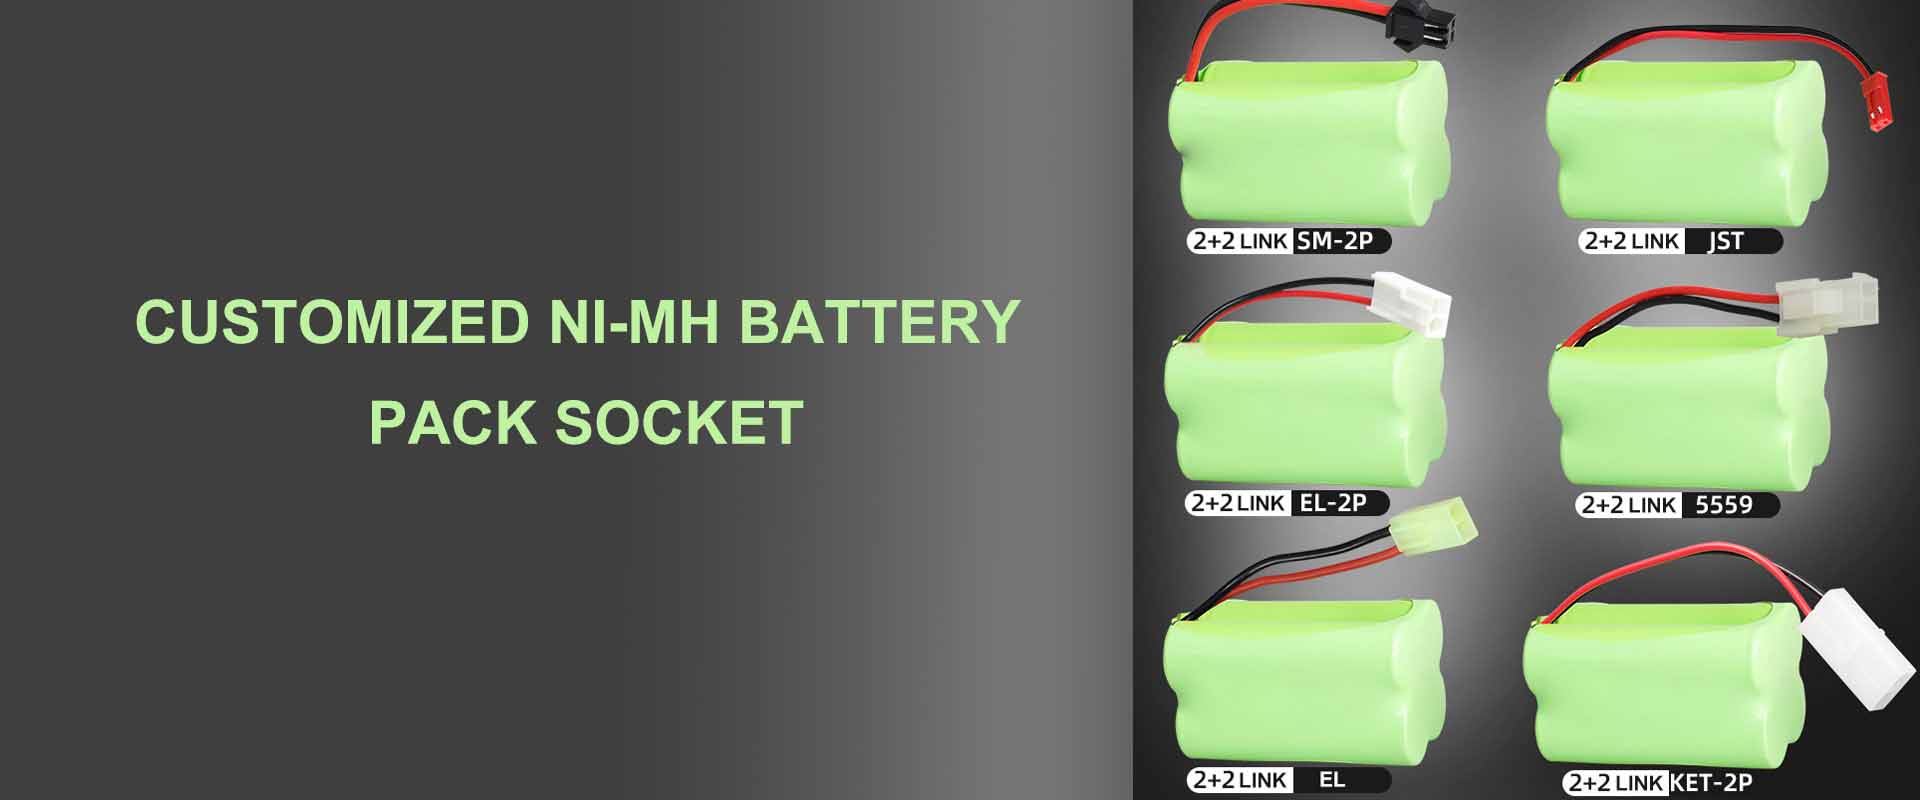 Ahoana ny fametrahana sy fampiasana ny fonosana bateria NiMH FAQ